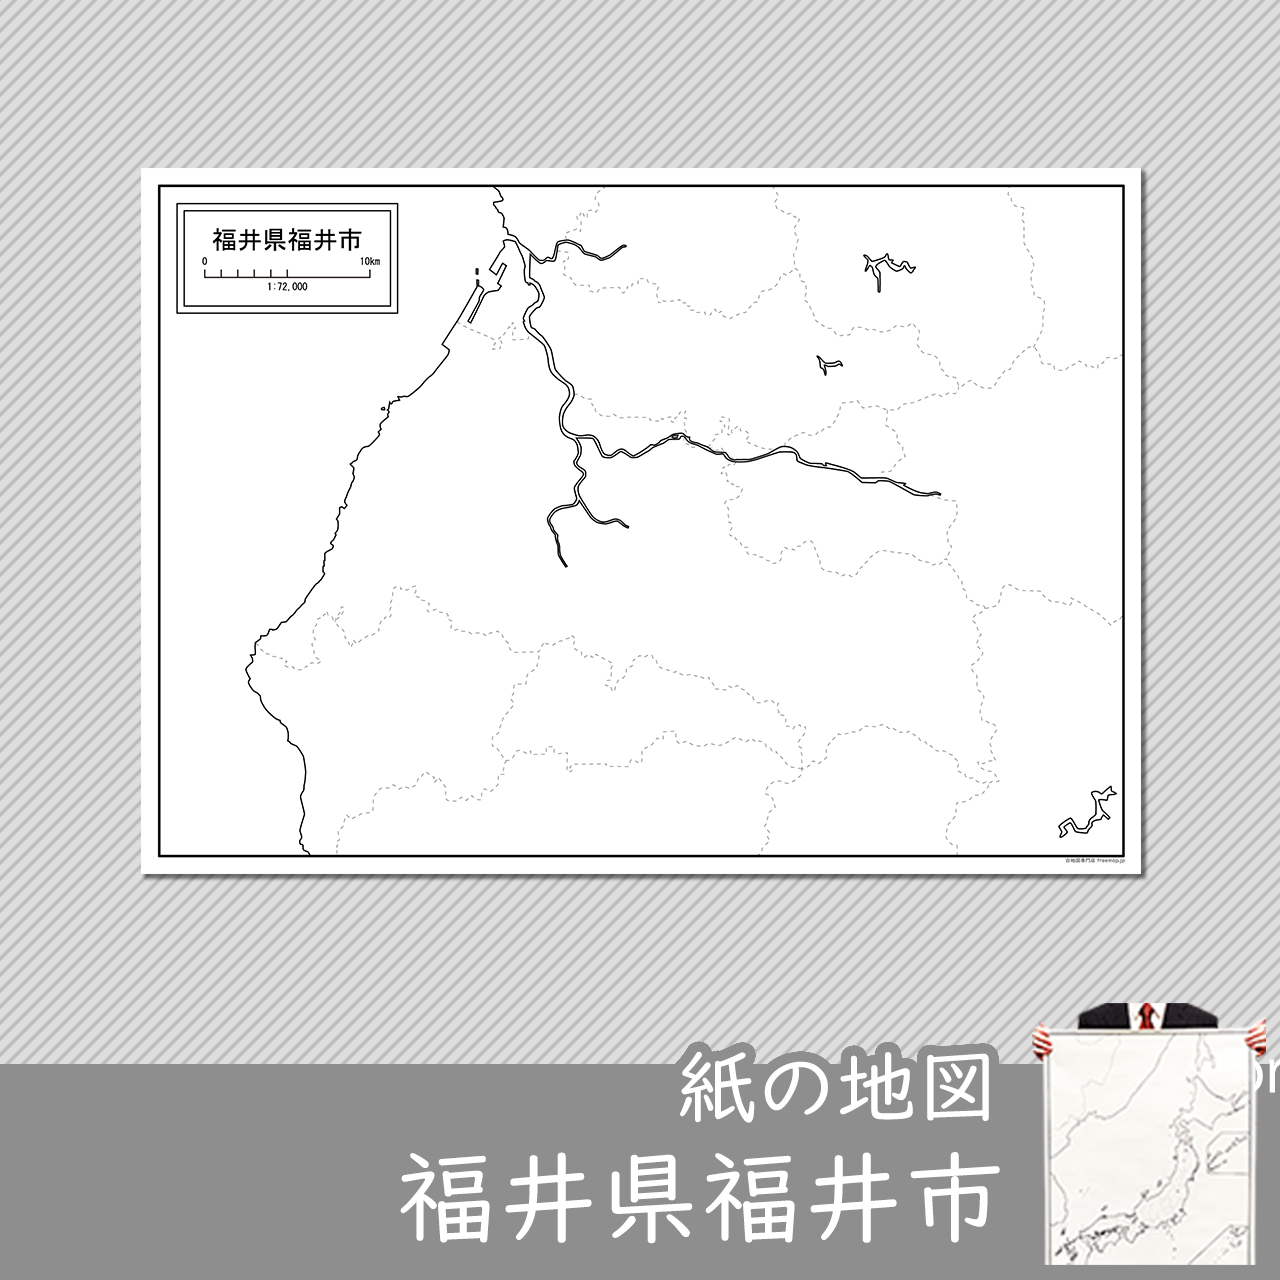 福井市の紙の白地図のサムネイル